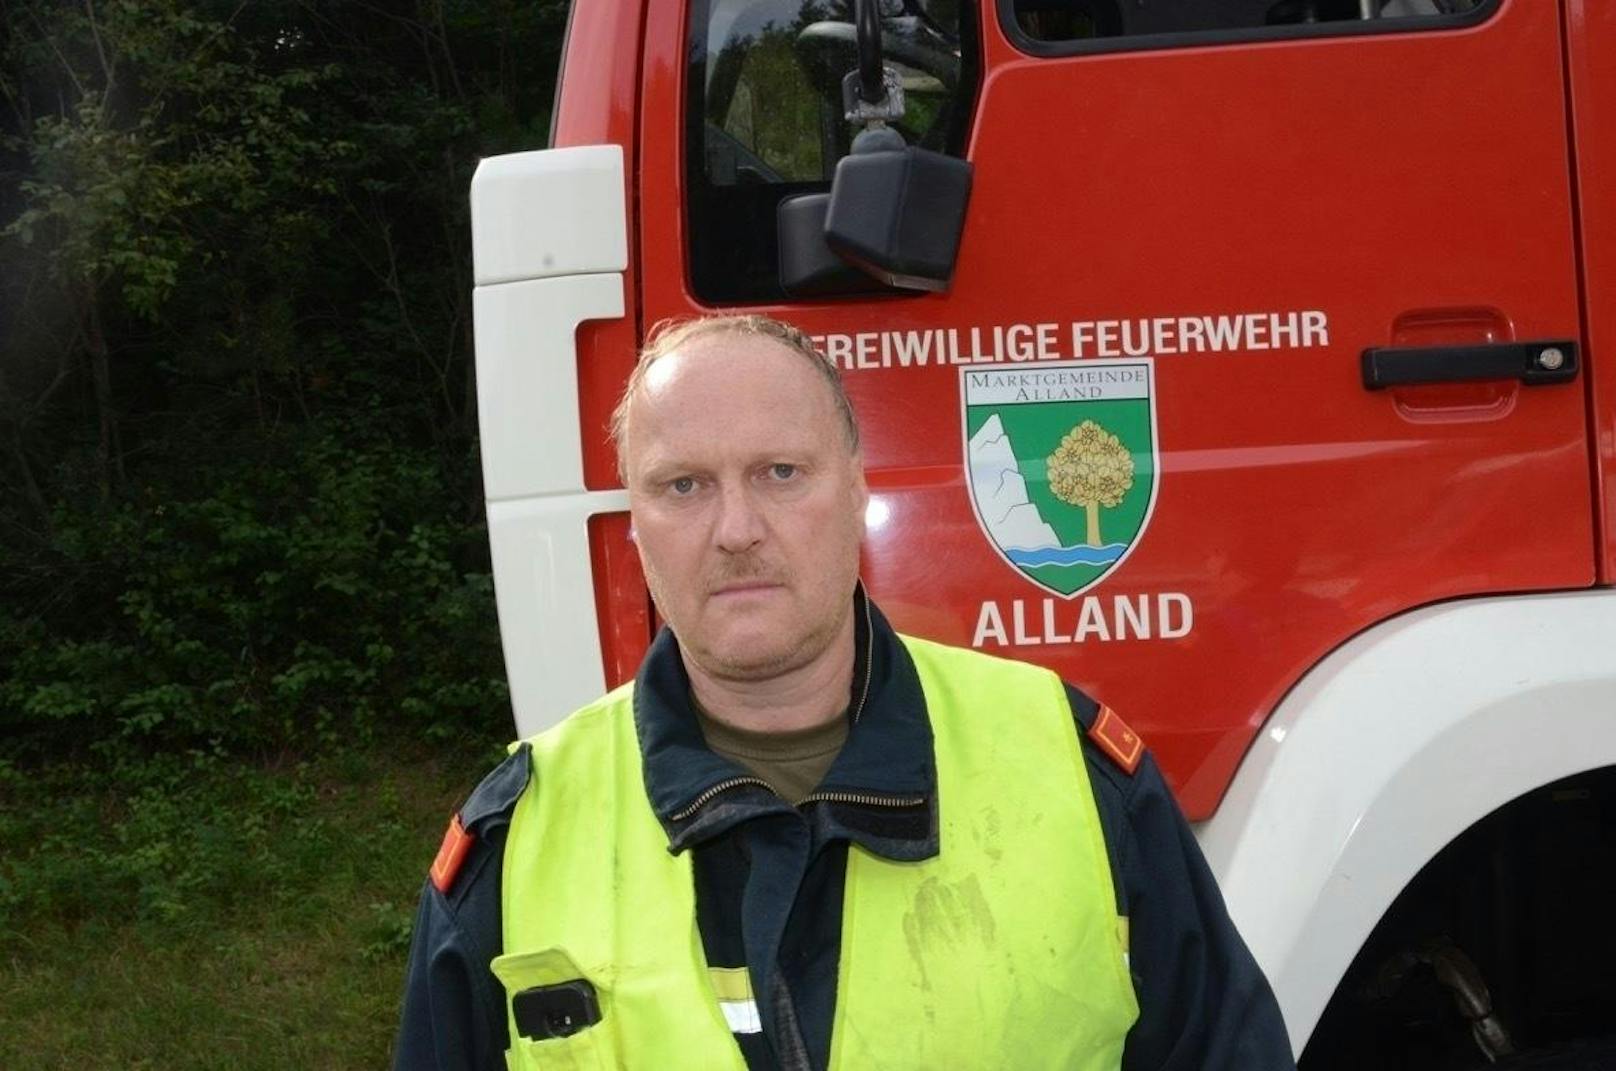 "Wir haben beim Eintreffen dann ein Bild vorgefunden, auf das wir nicht eingestellt waren", bestätigt auch Feuerwehr-Einsatzleiter Georg Baden von der Feuerwehr Alland die Situation für sich und seine Kameraden.